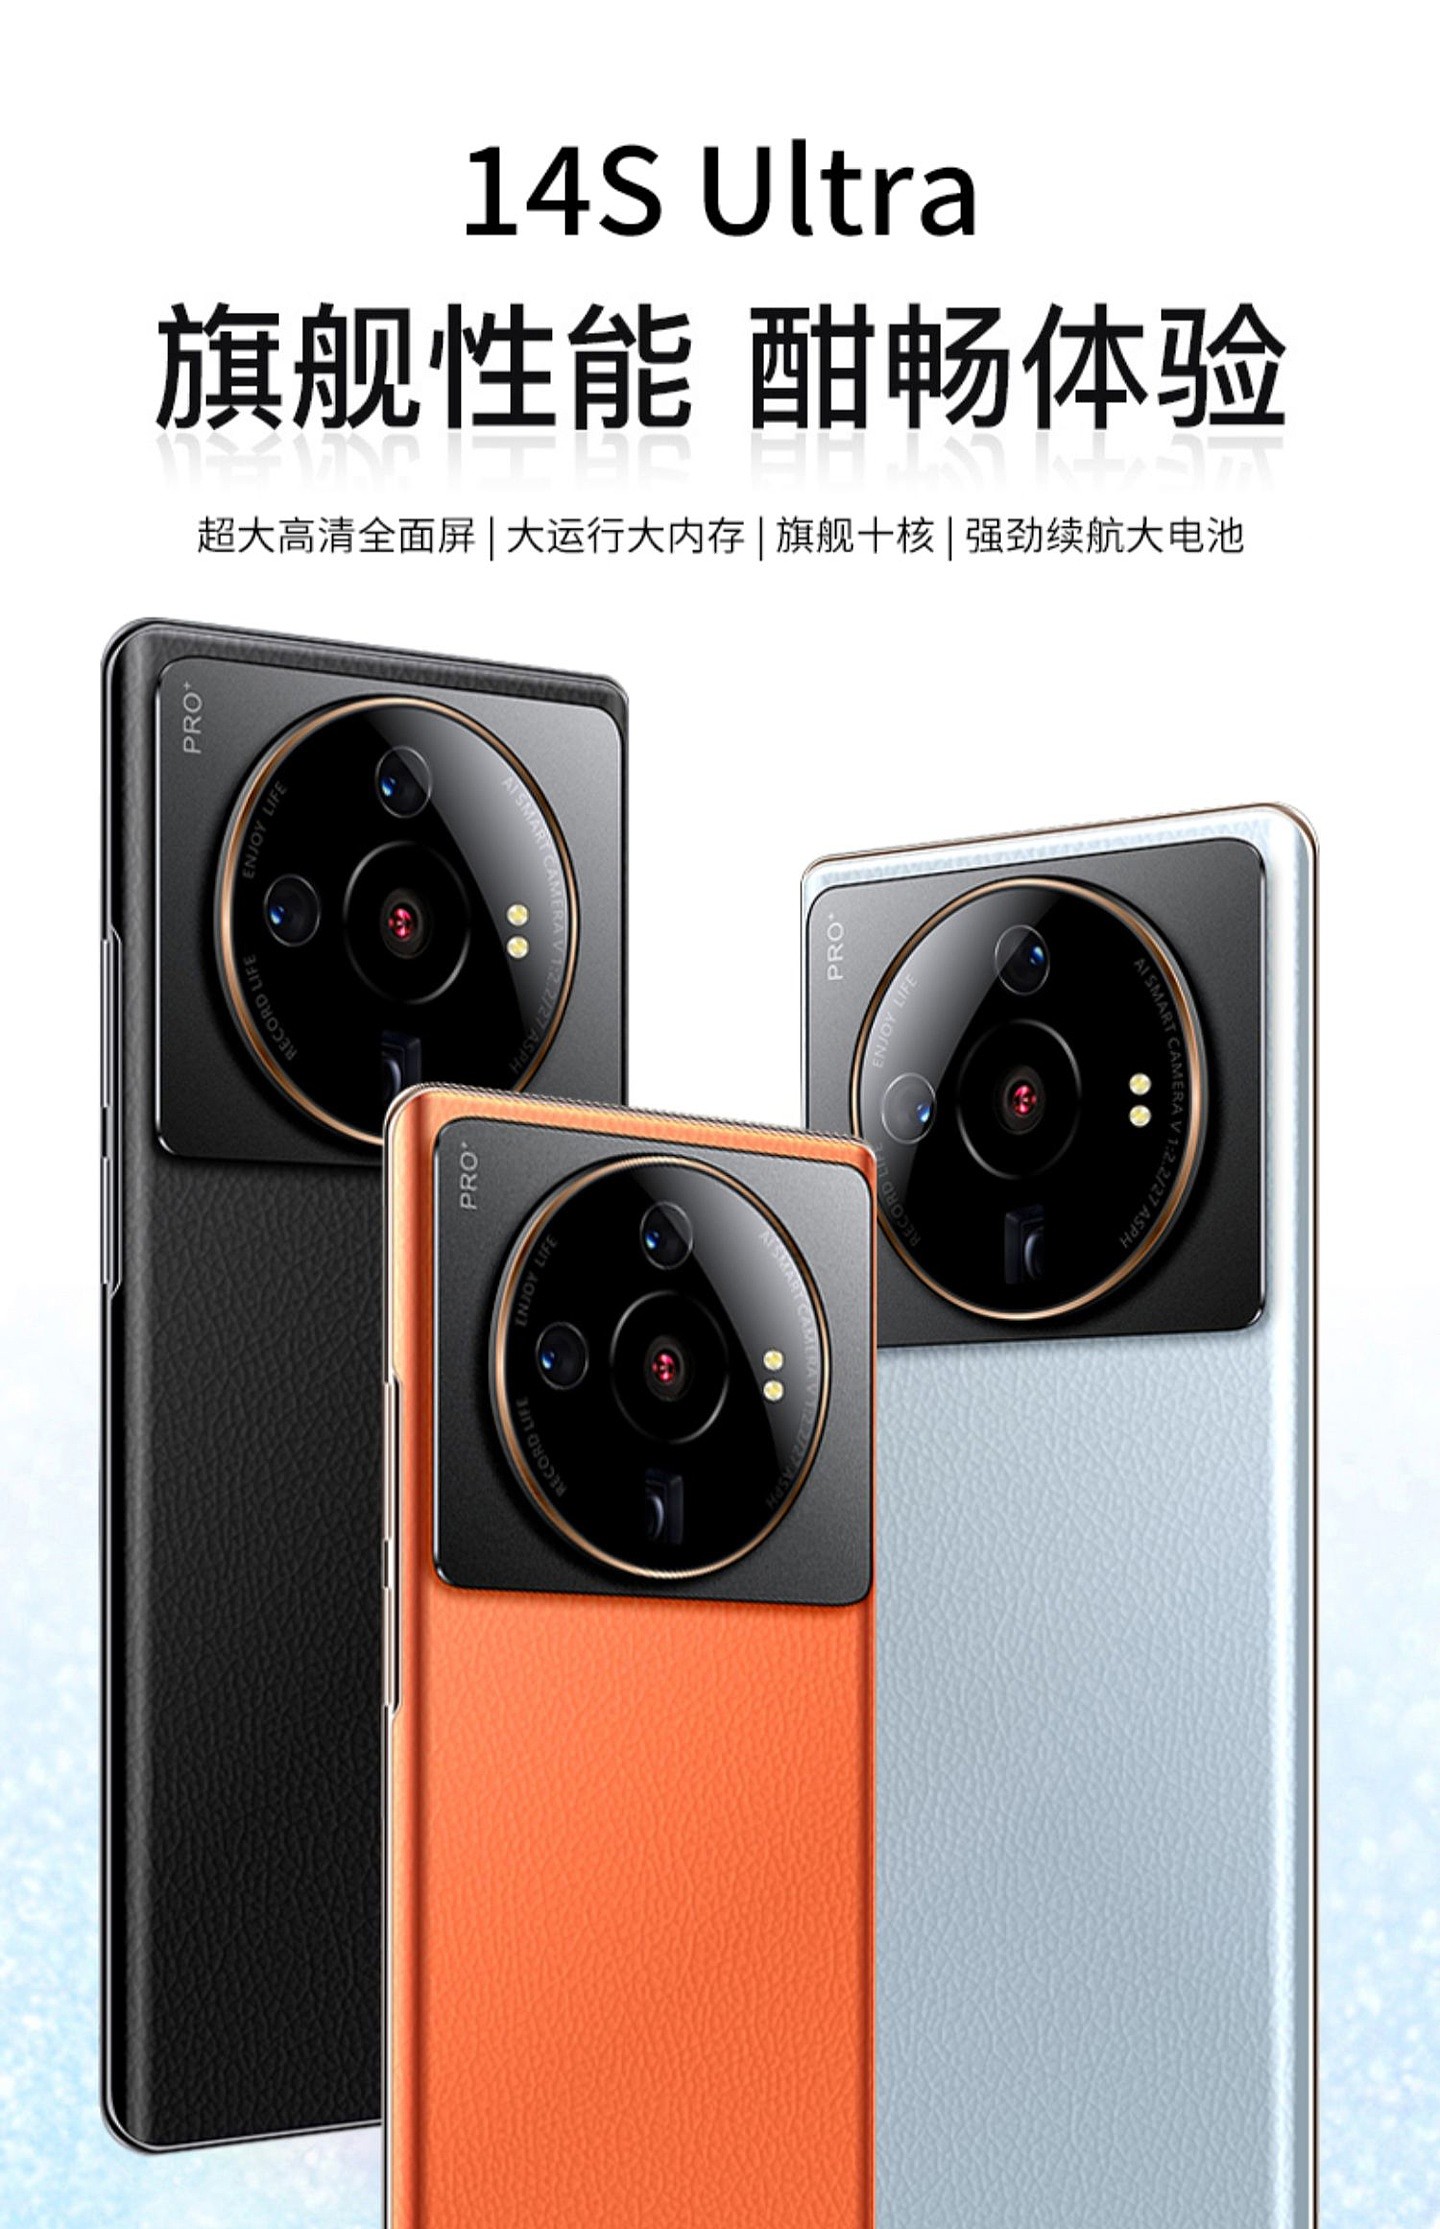 酷比 14S Ultra 手机发布：神似小米 12S Ultra，配置奇特，售价 788 元起 - 1